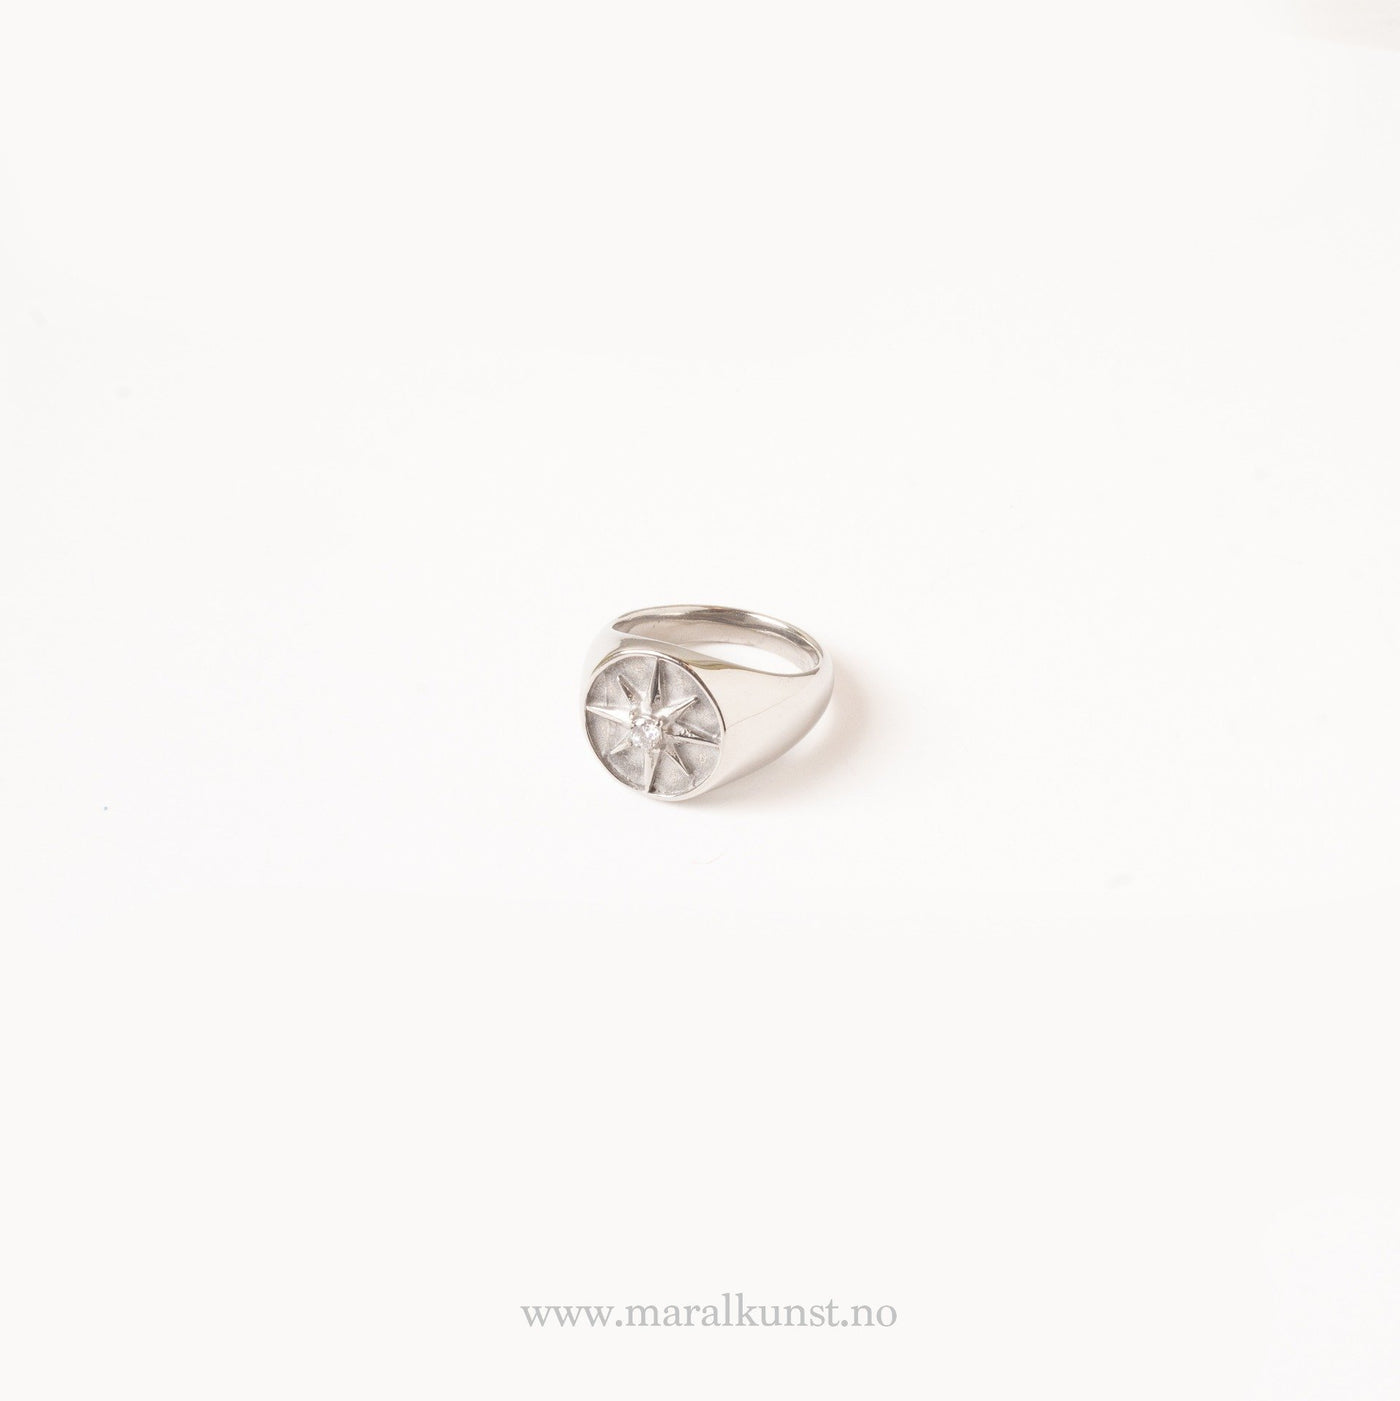 Minimalist North Star Ring - Maral Kunst Jewelry